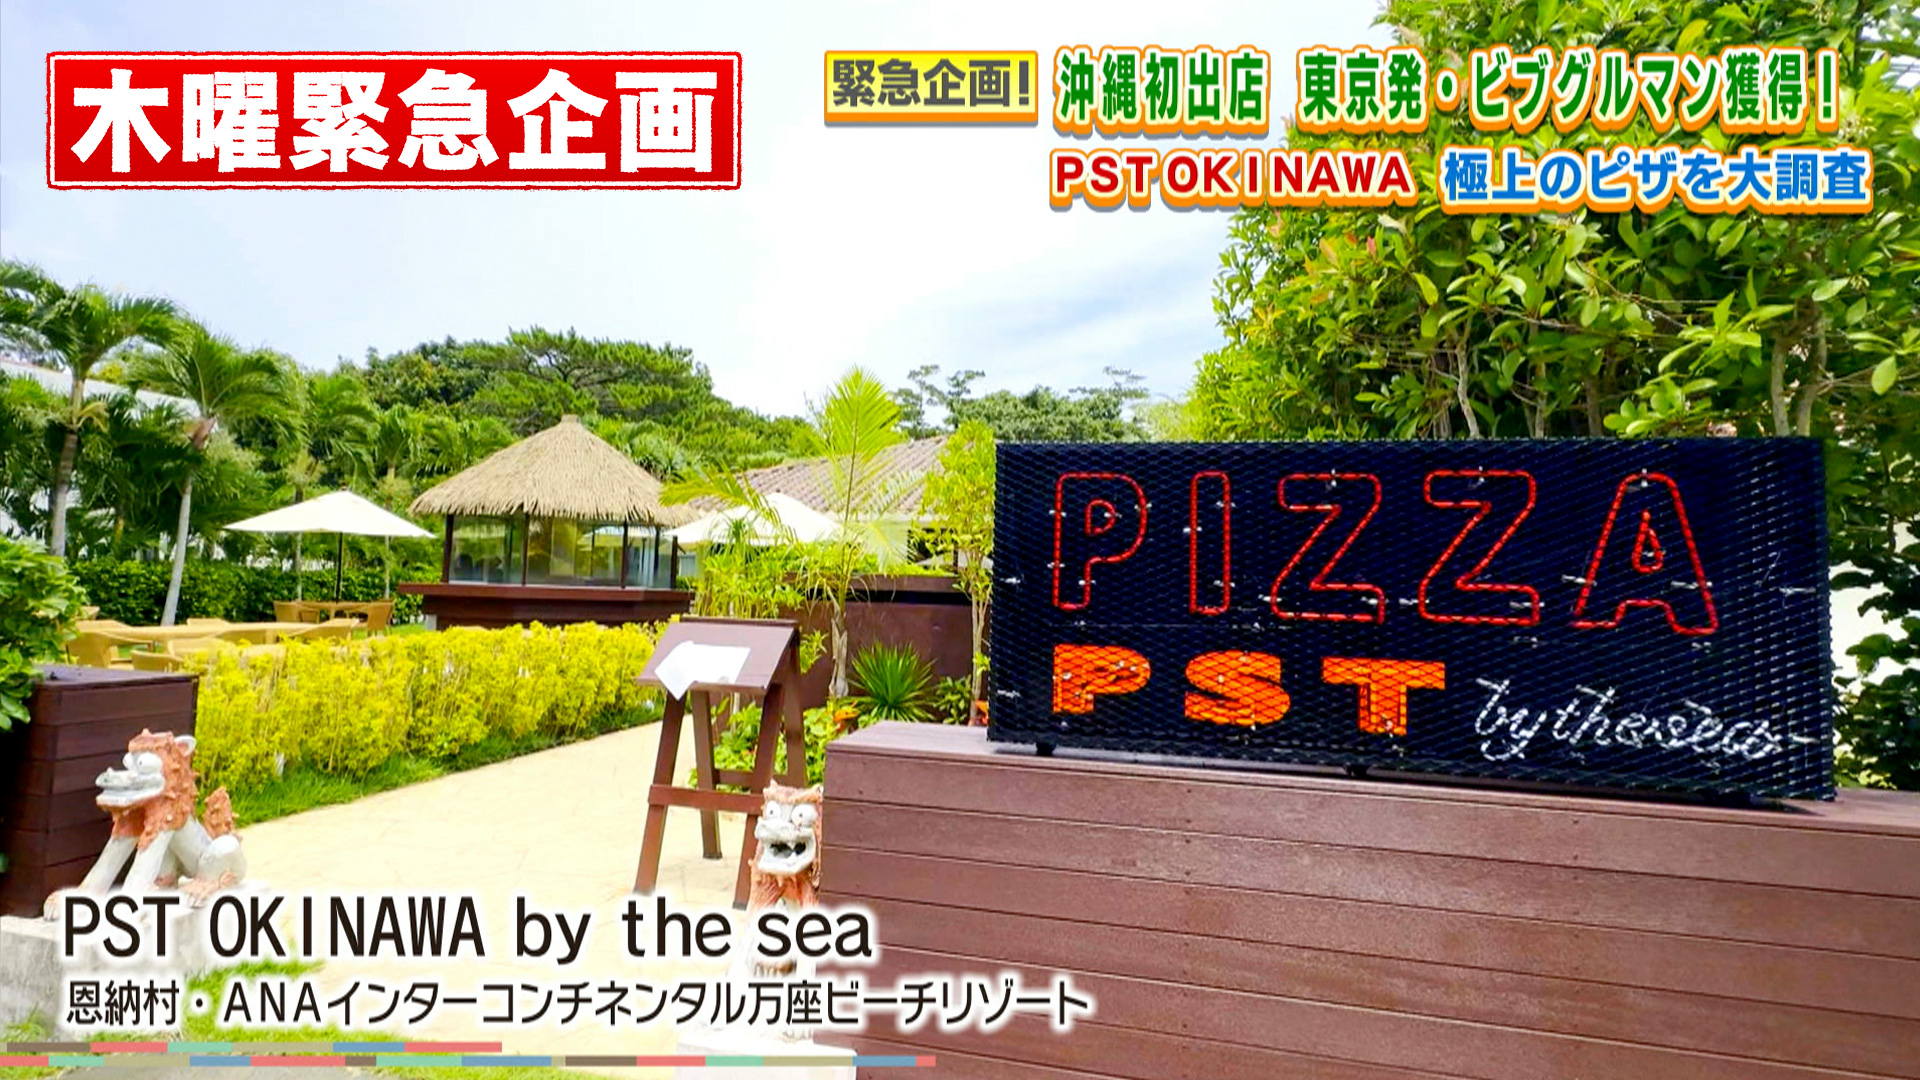 PST OKINAWA 極上のピザを大調査